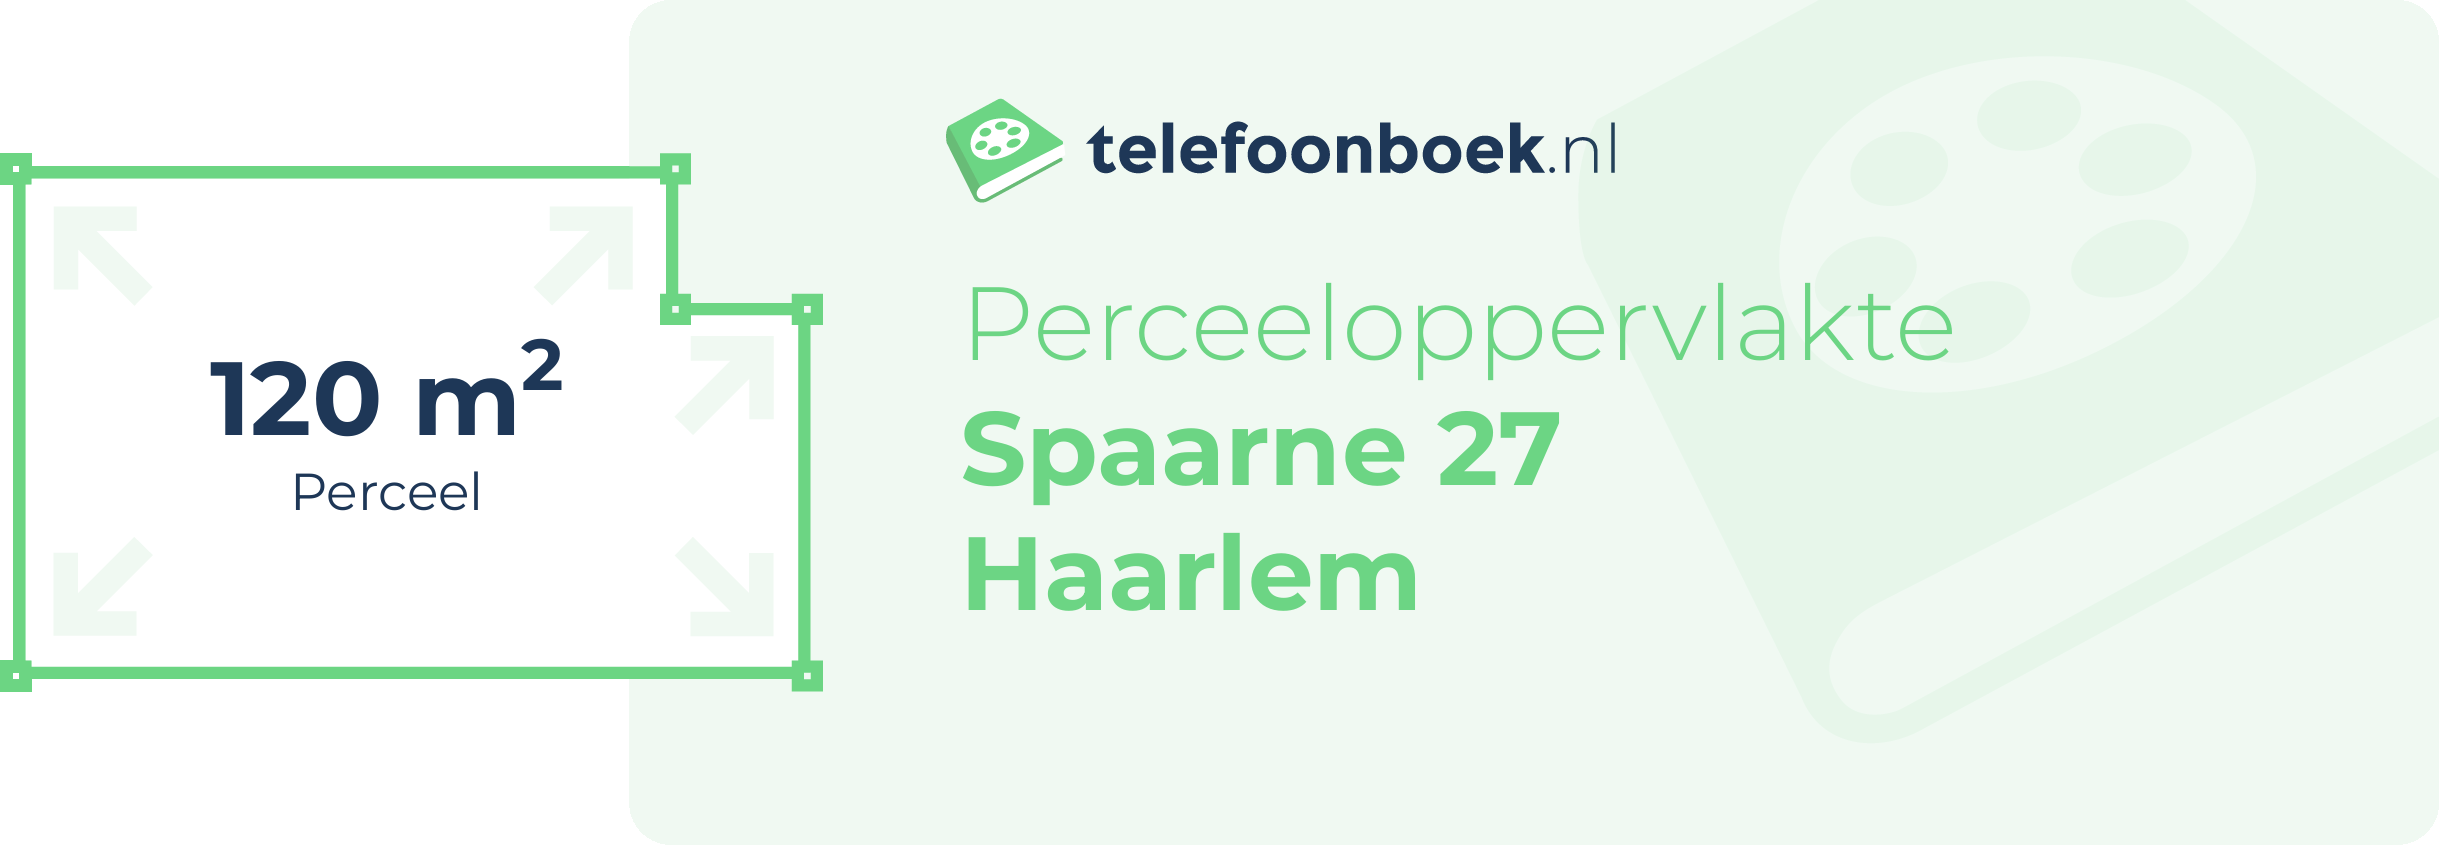 Perceeloppervlakte Spaarne 27 Haarlem